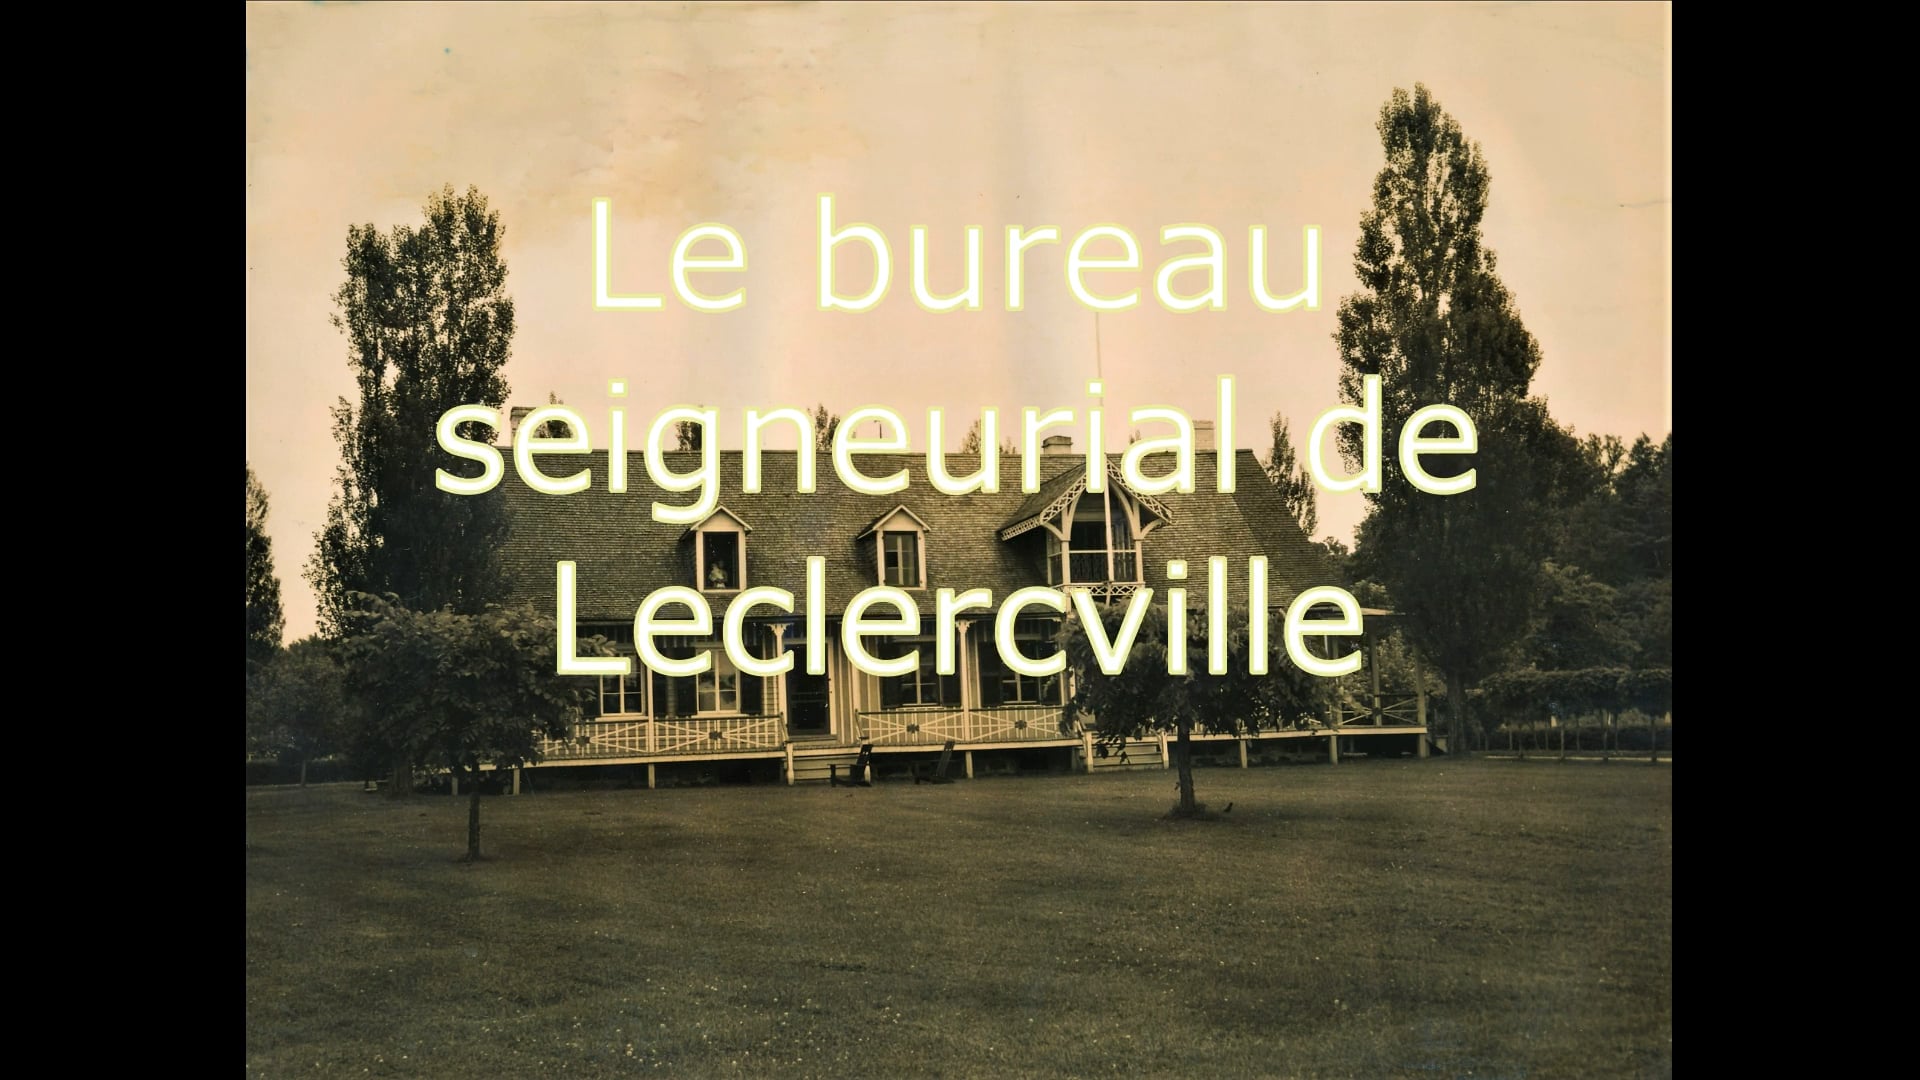 Le bureau seigneurial de Leclercville